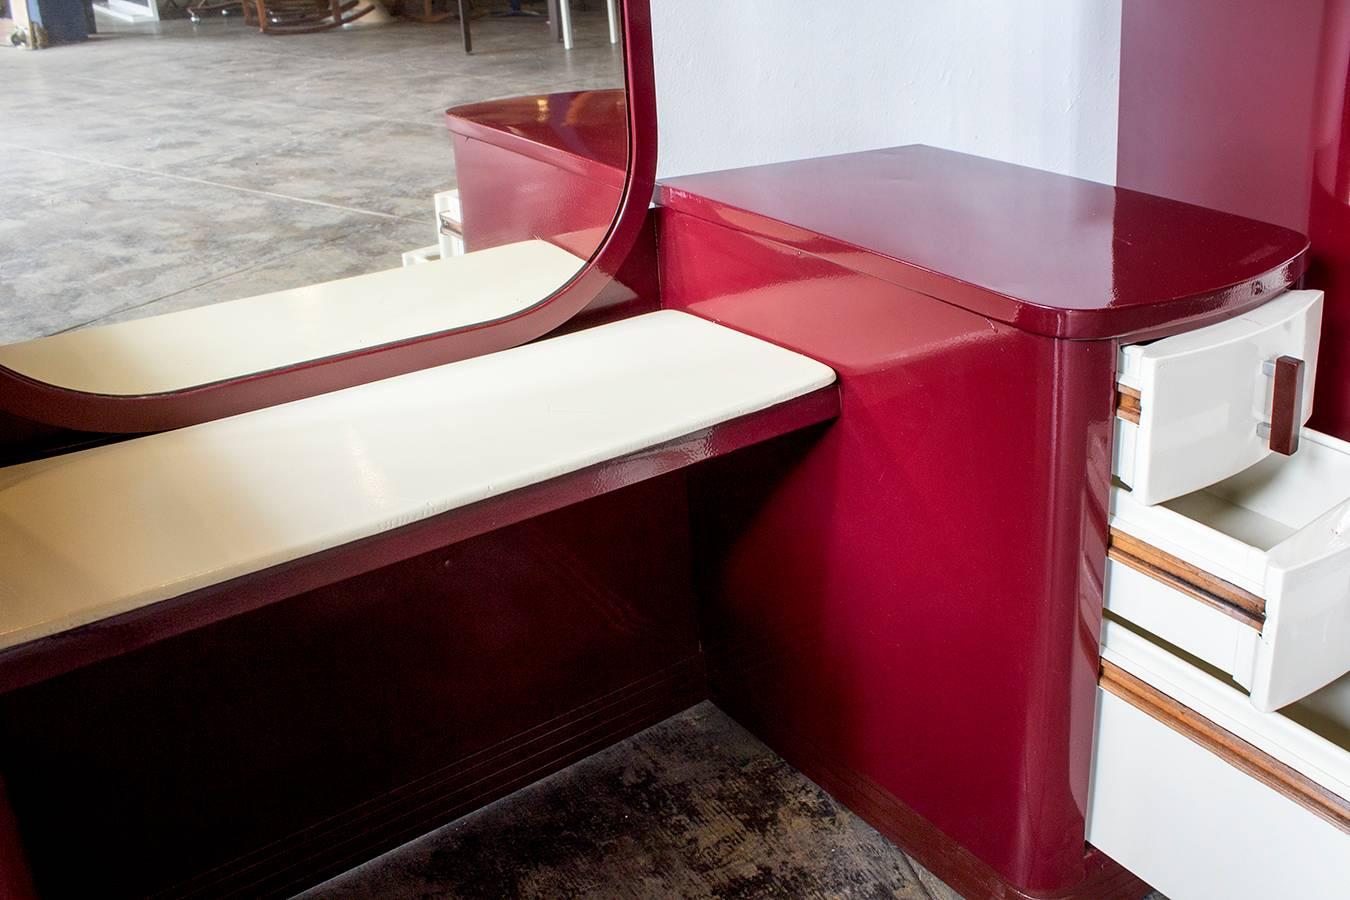 Art Deco Norman Bel Geddes Dresser and Vanity Bedroom Set, Refinished